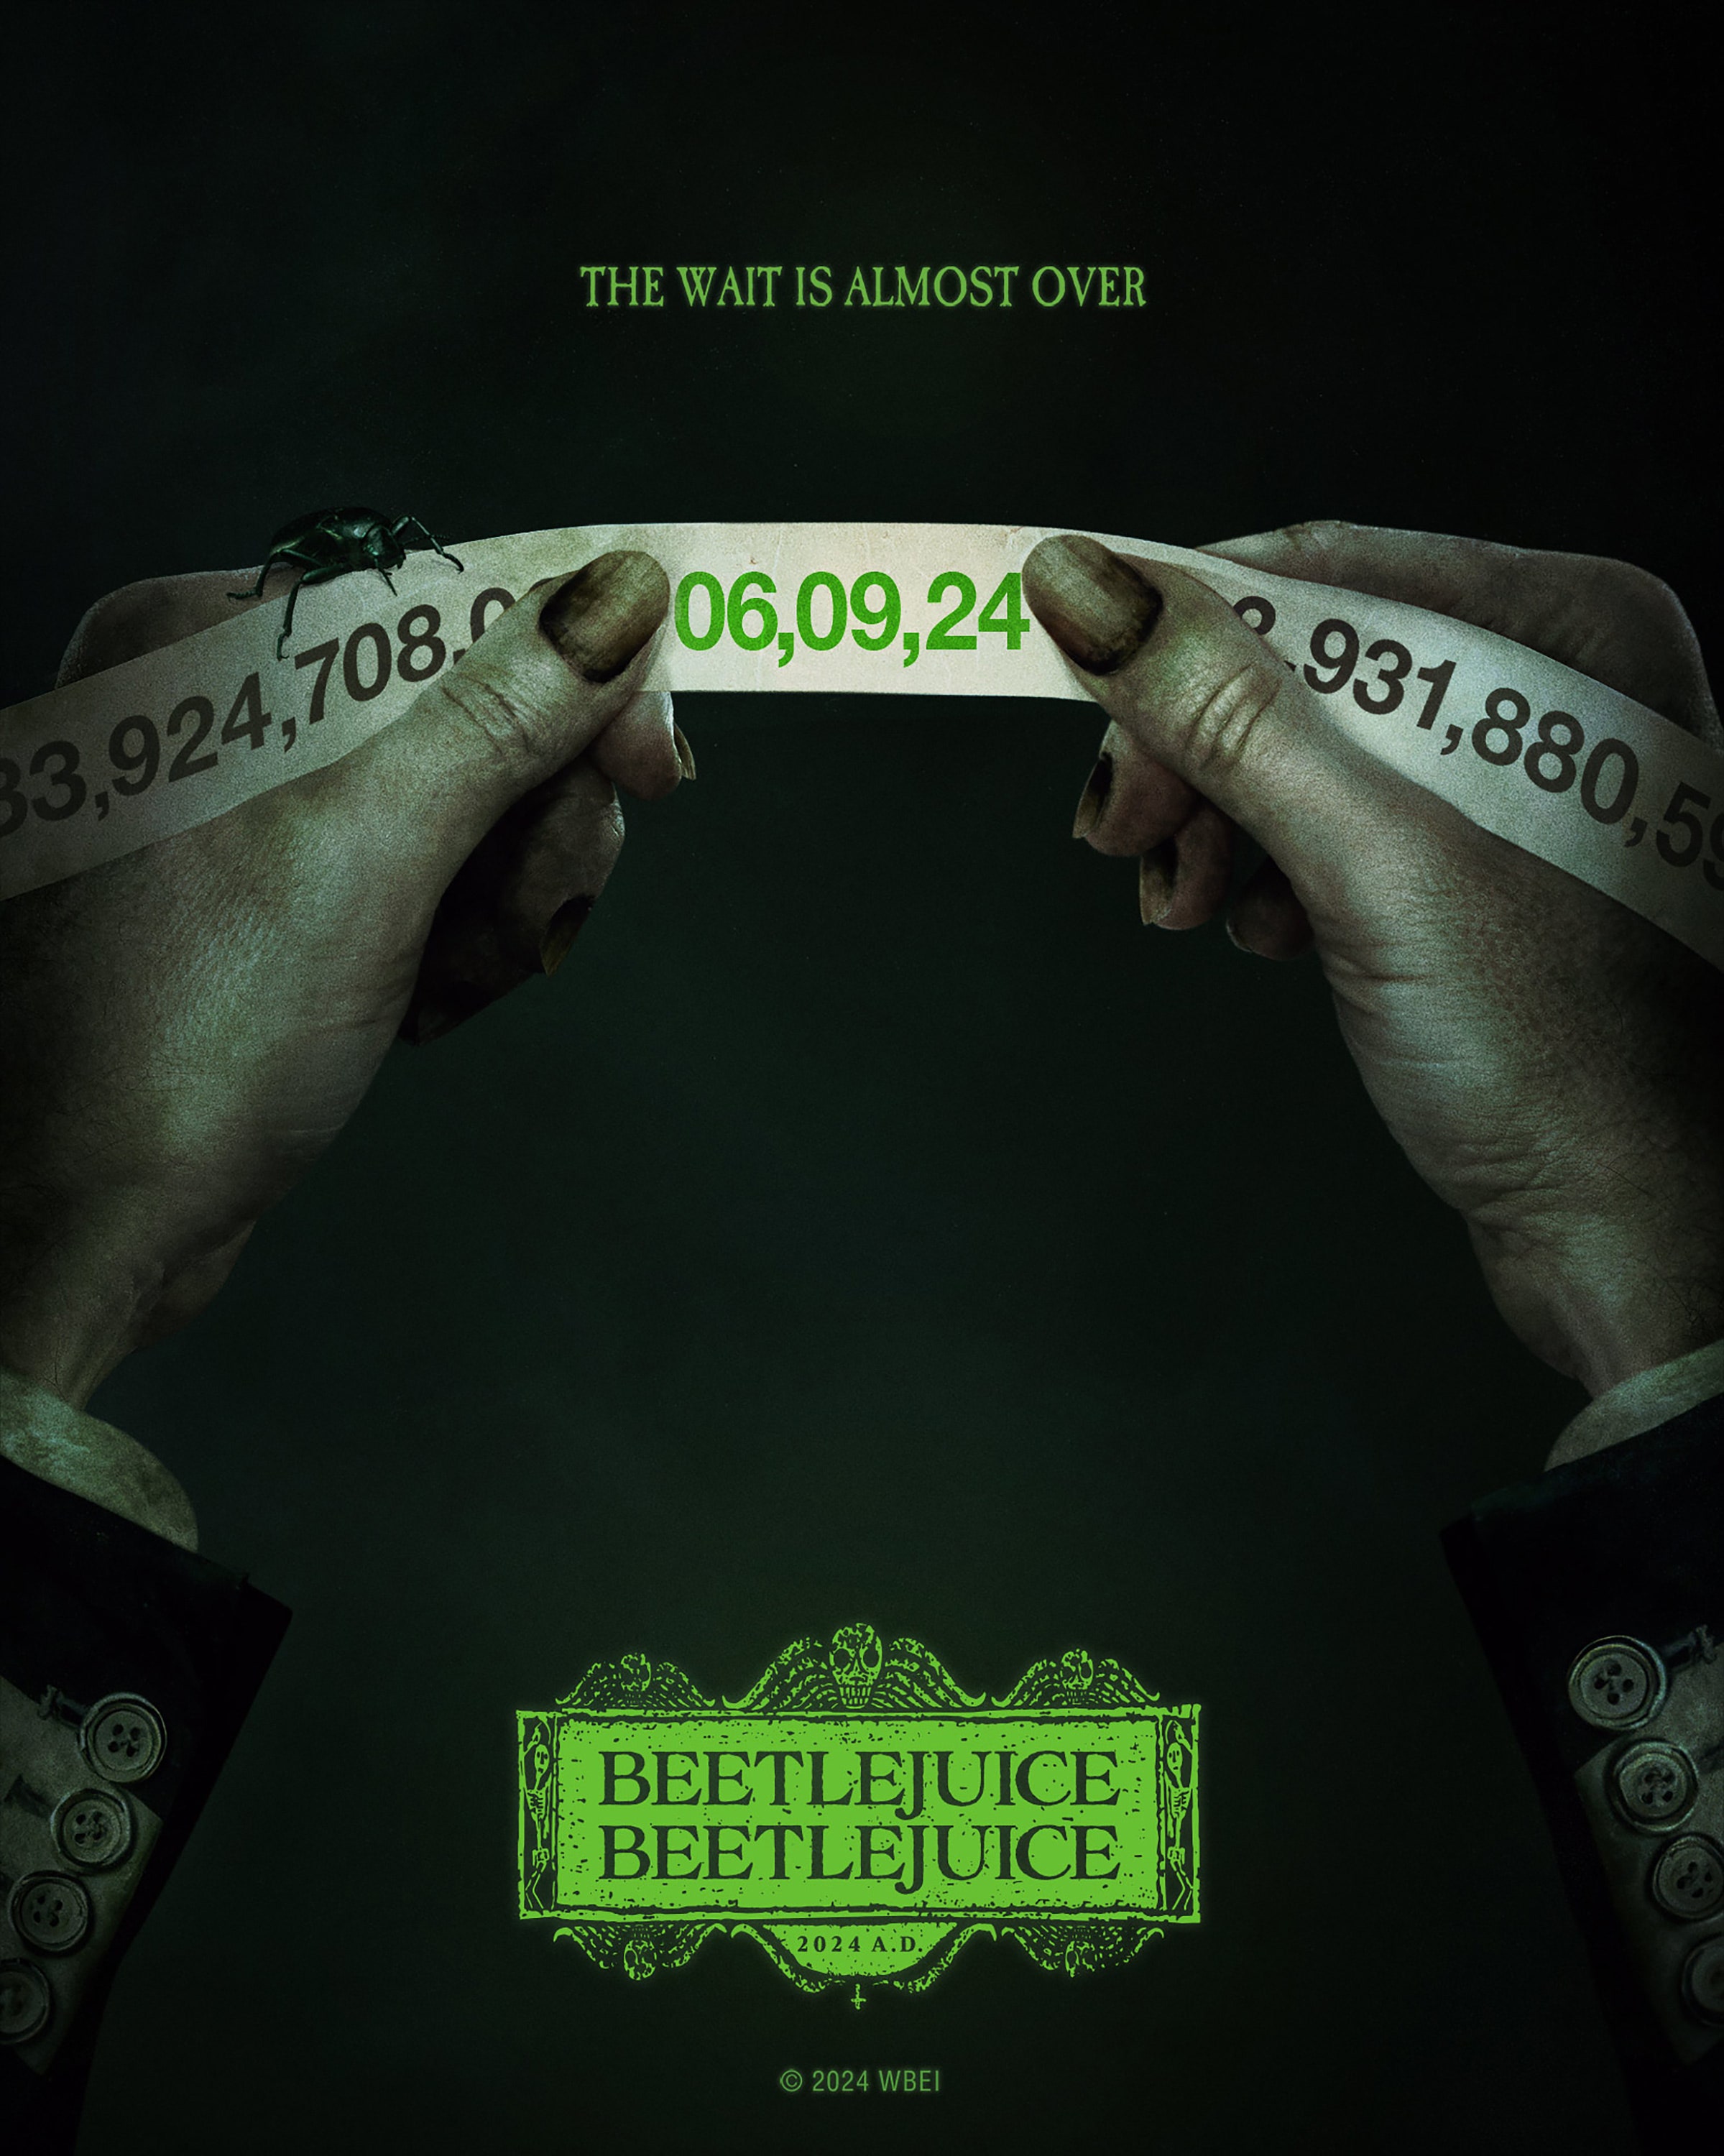 beetlejuice 2: fecha de estreno, reparto y tráiler de la película